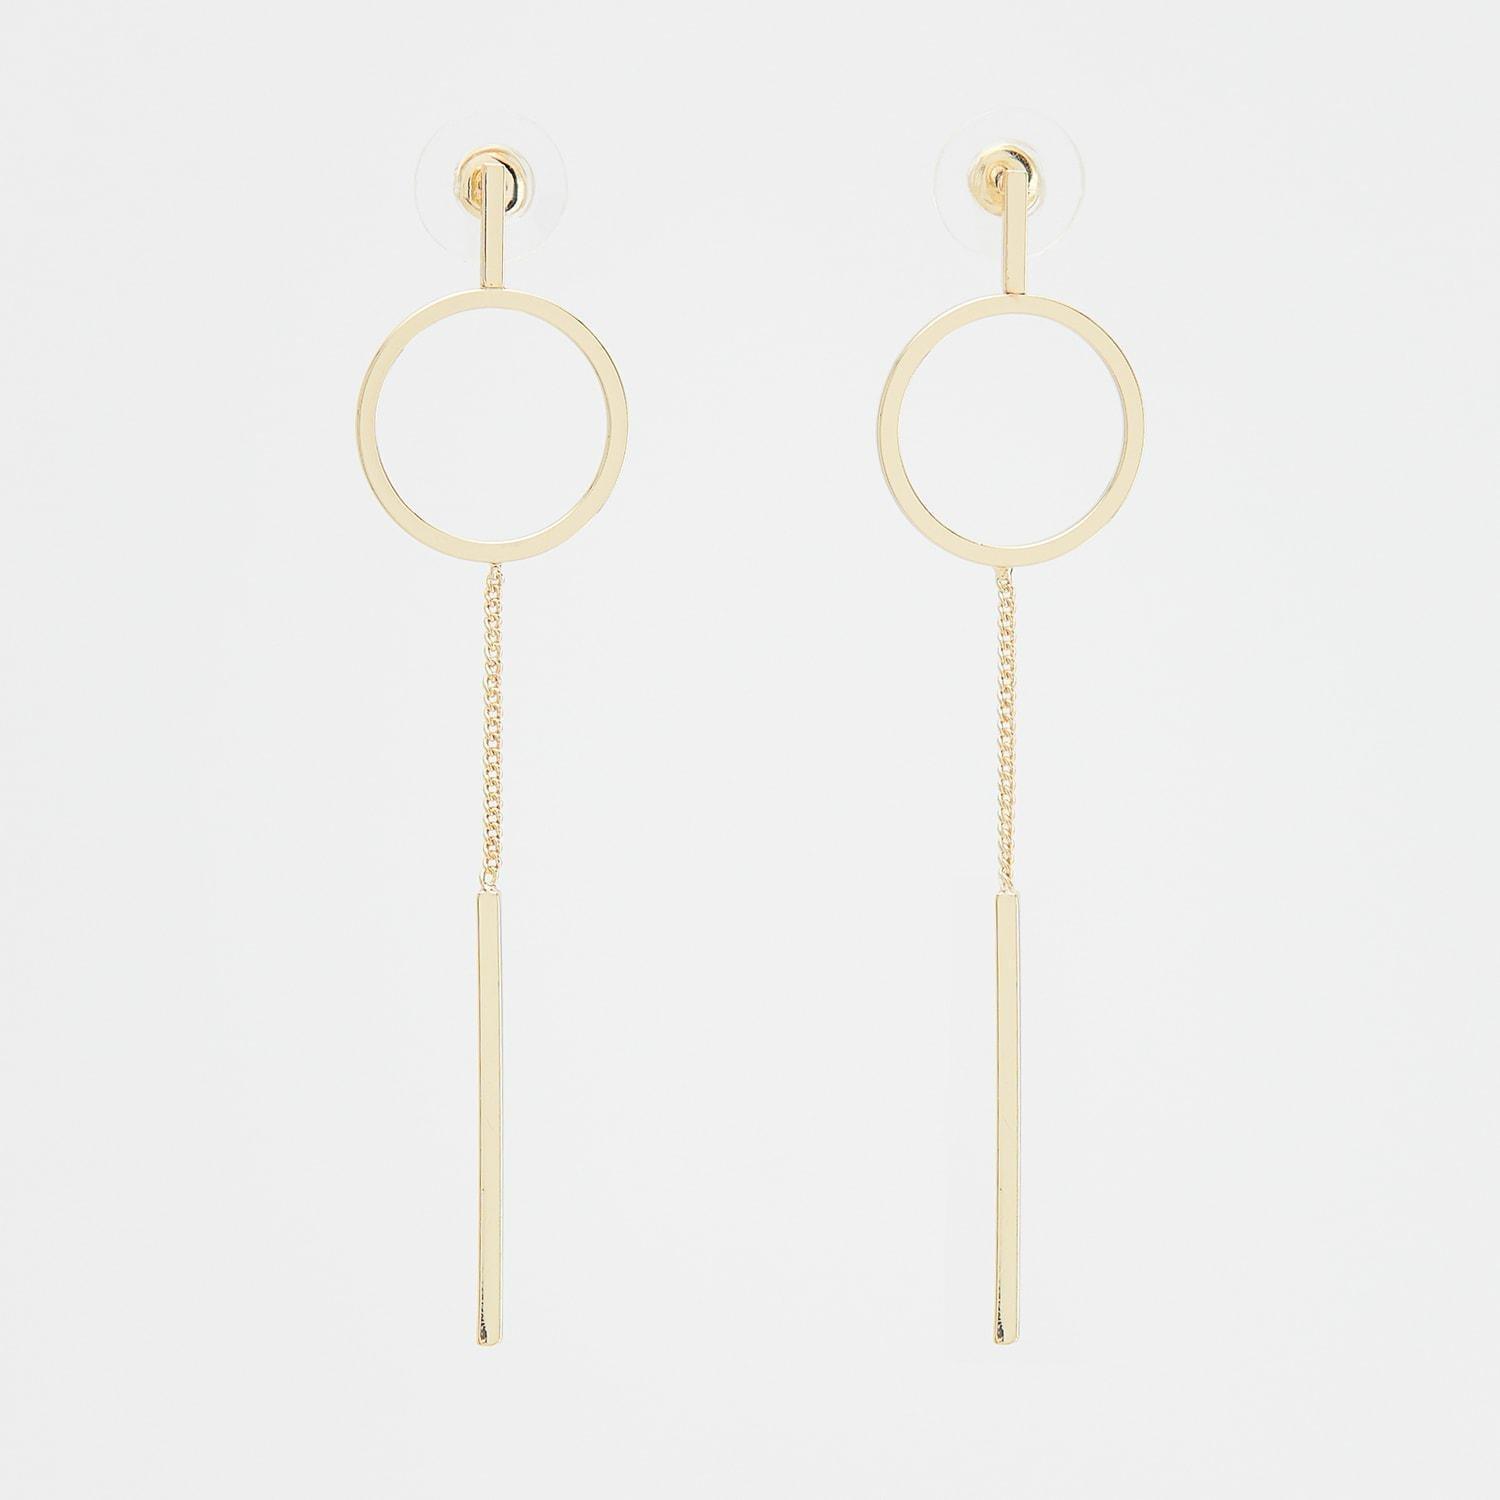 Reserved - Golden Dangle Earrings